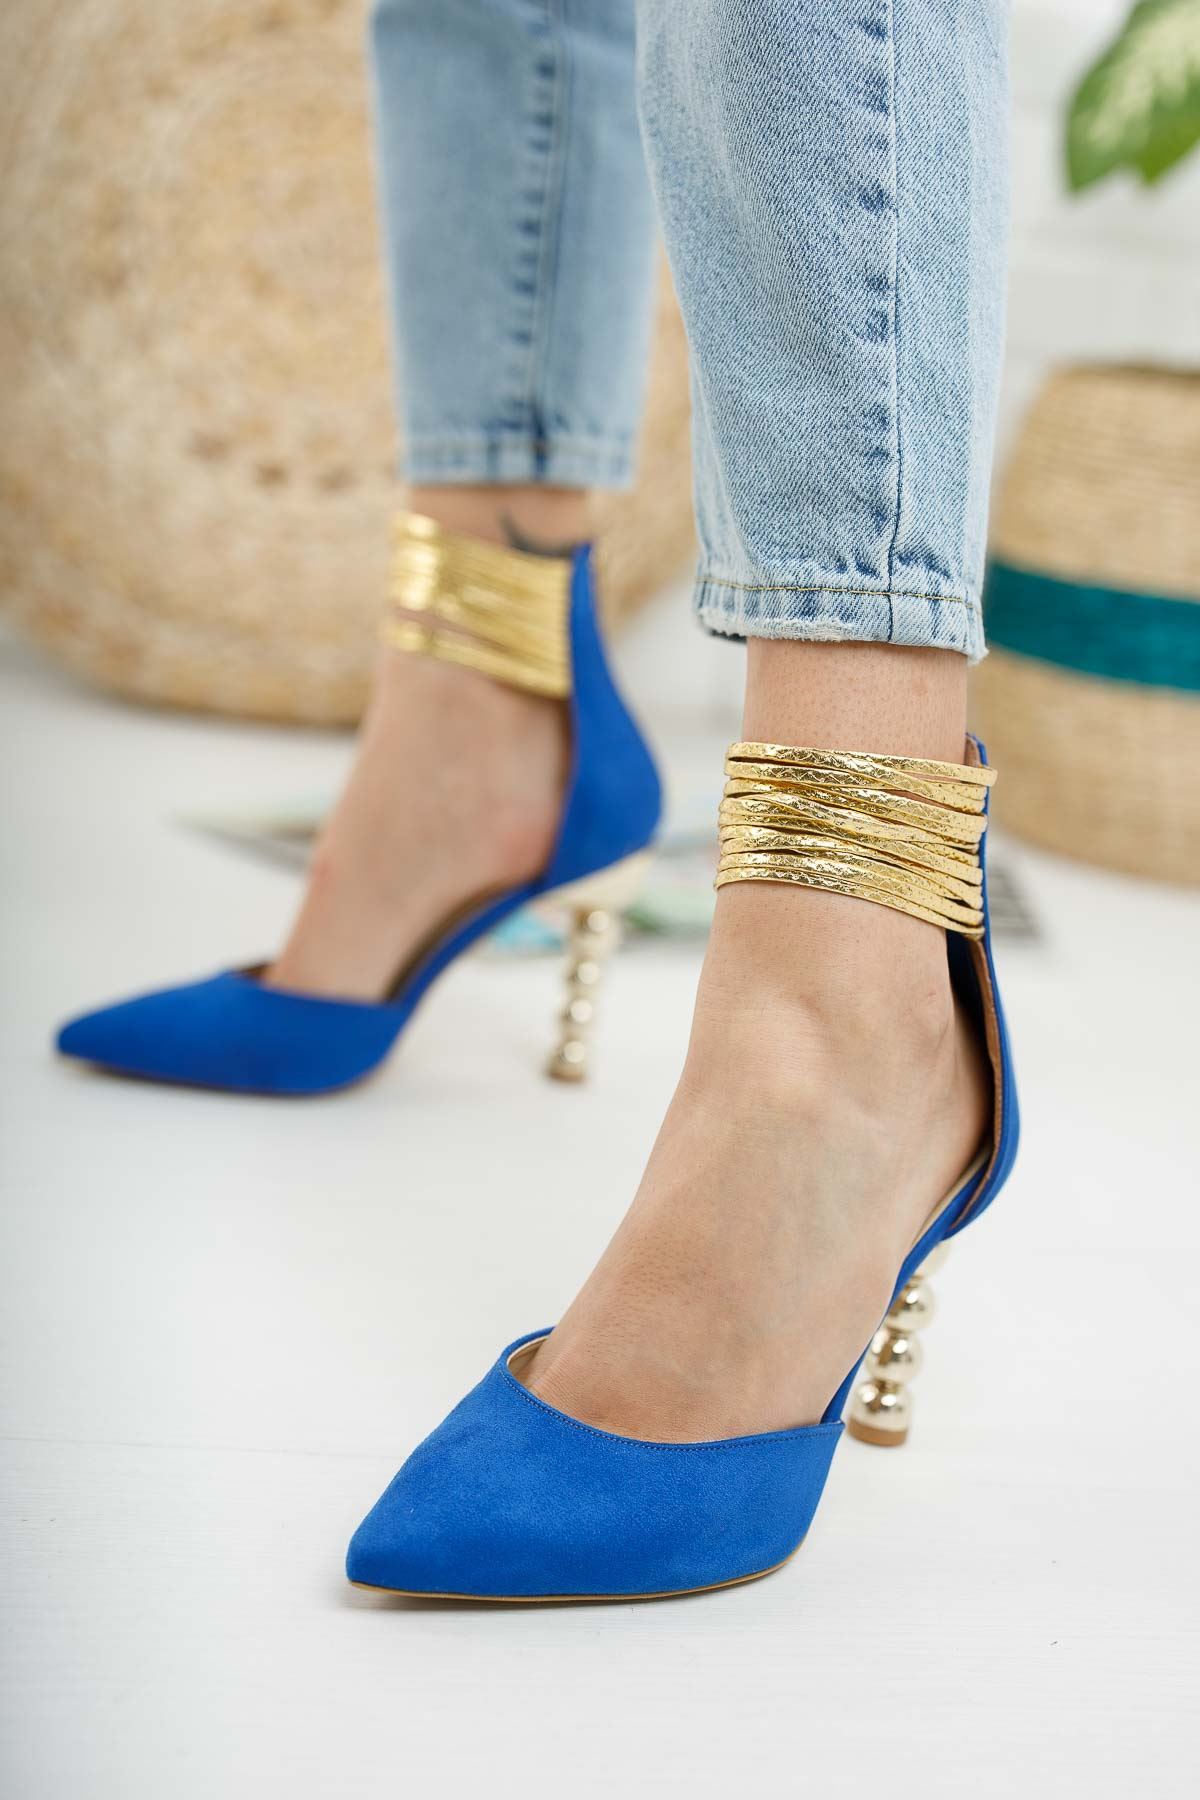 Miny Sax Mavi Süet Topuklu Ayakkabı Stiletto